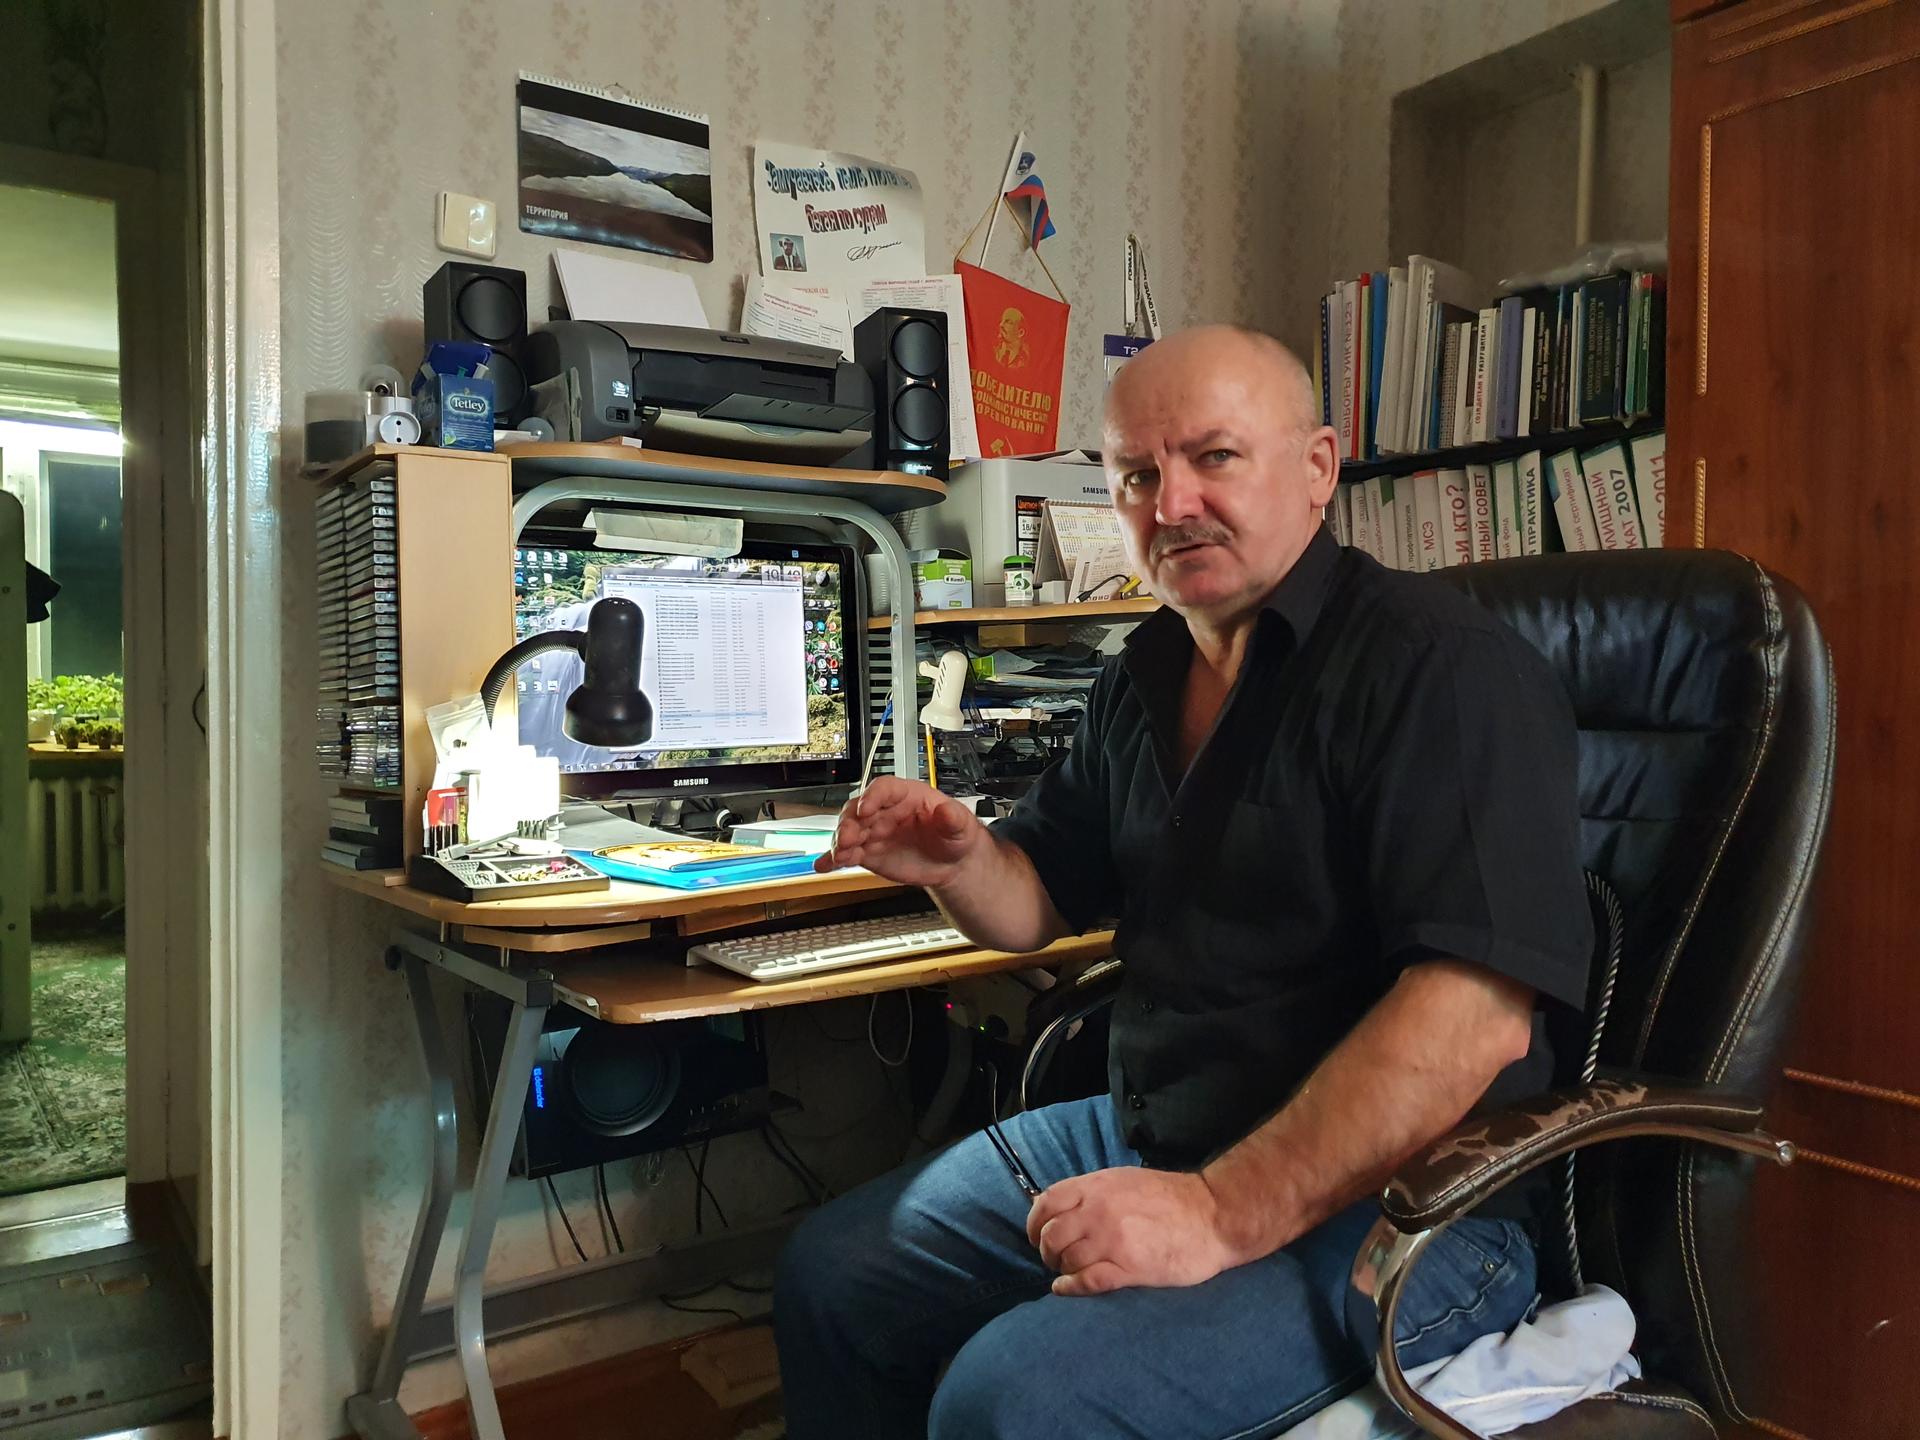 A bald man sits at a desk